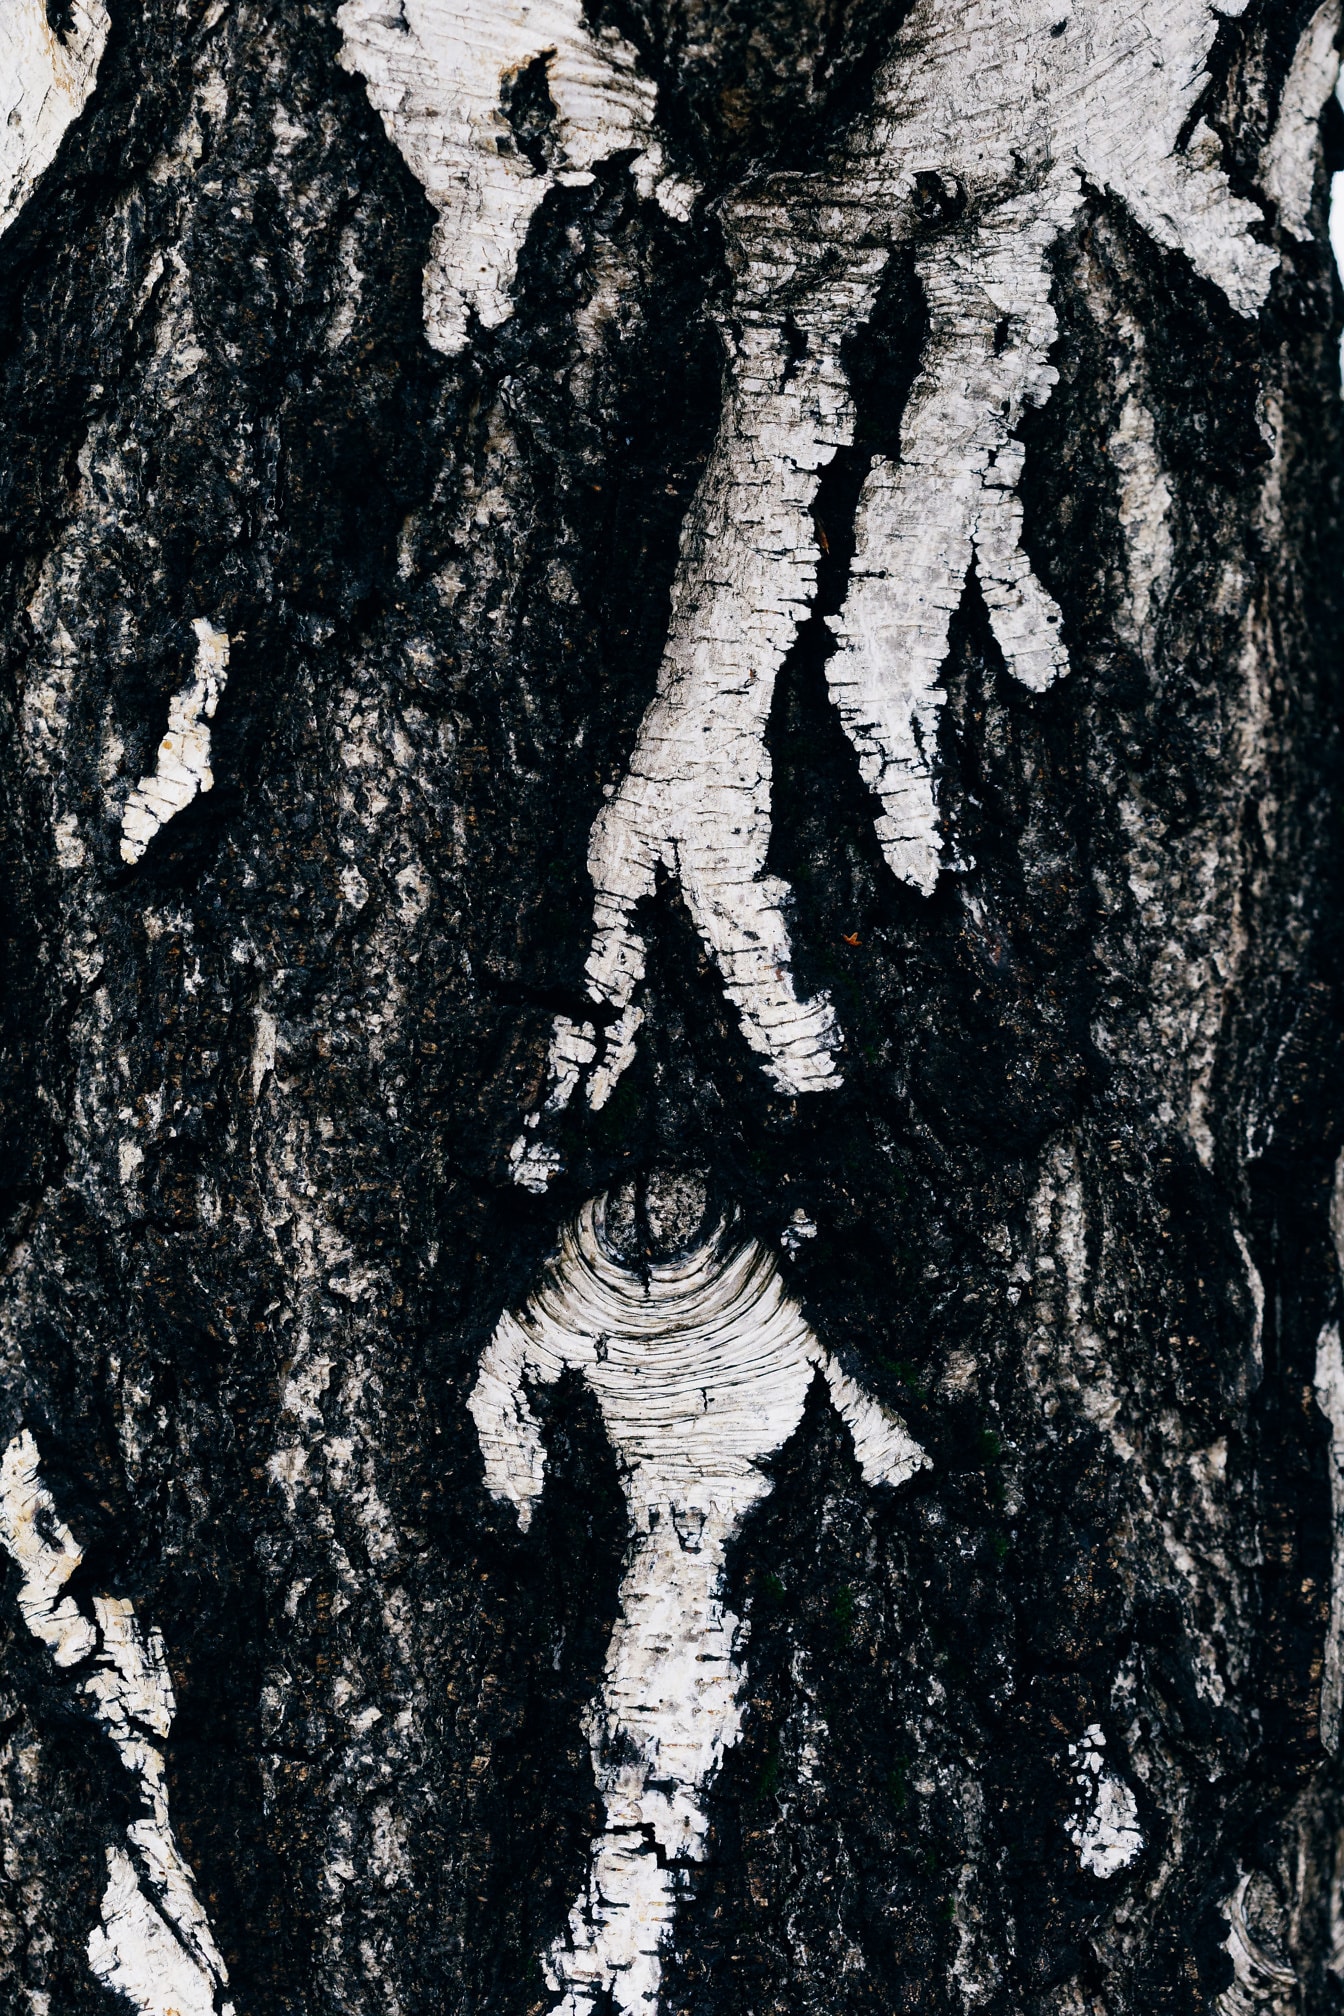 Tekstur hitam dan putih kulit pohon birch pada foto close-up batang pohon